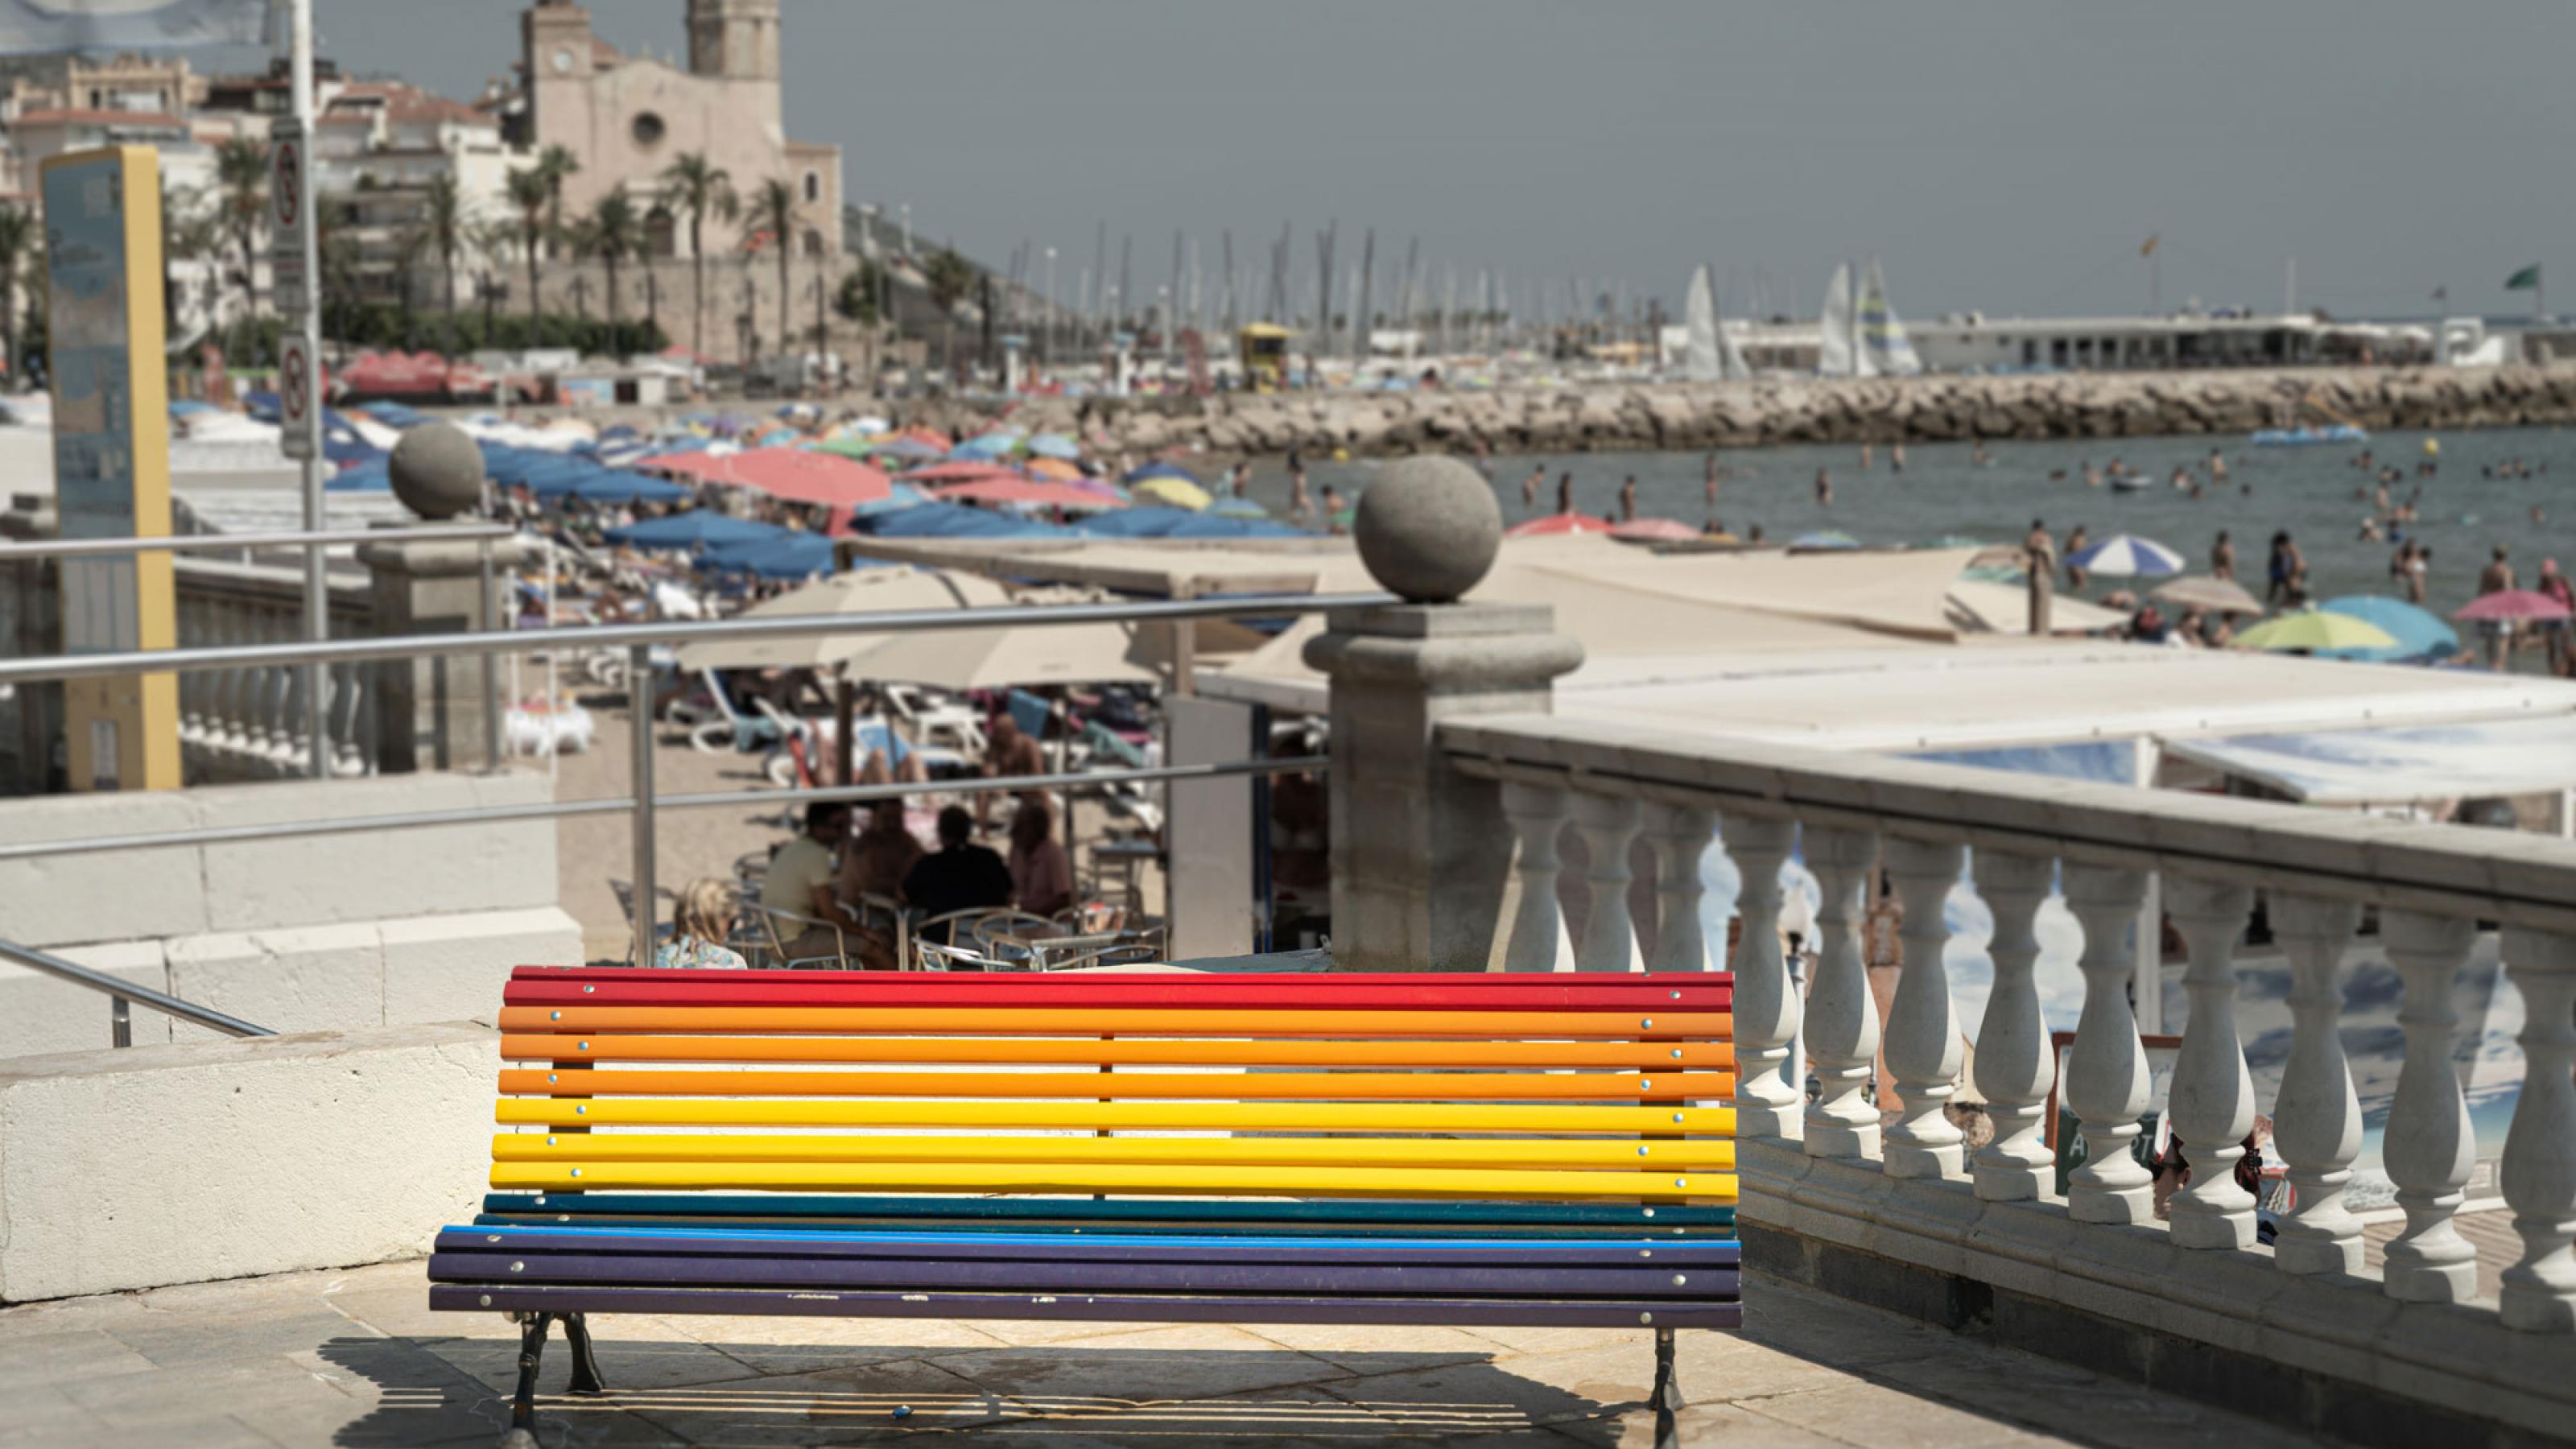 Eine in den Regenbogenfarben bemalte Sitzbank im spanischen Küstenstädtchen Sitges. Im Hintergrund ist eine Kirche, die Strandpromenade und das Meer zu sehen.